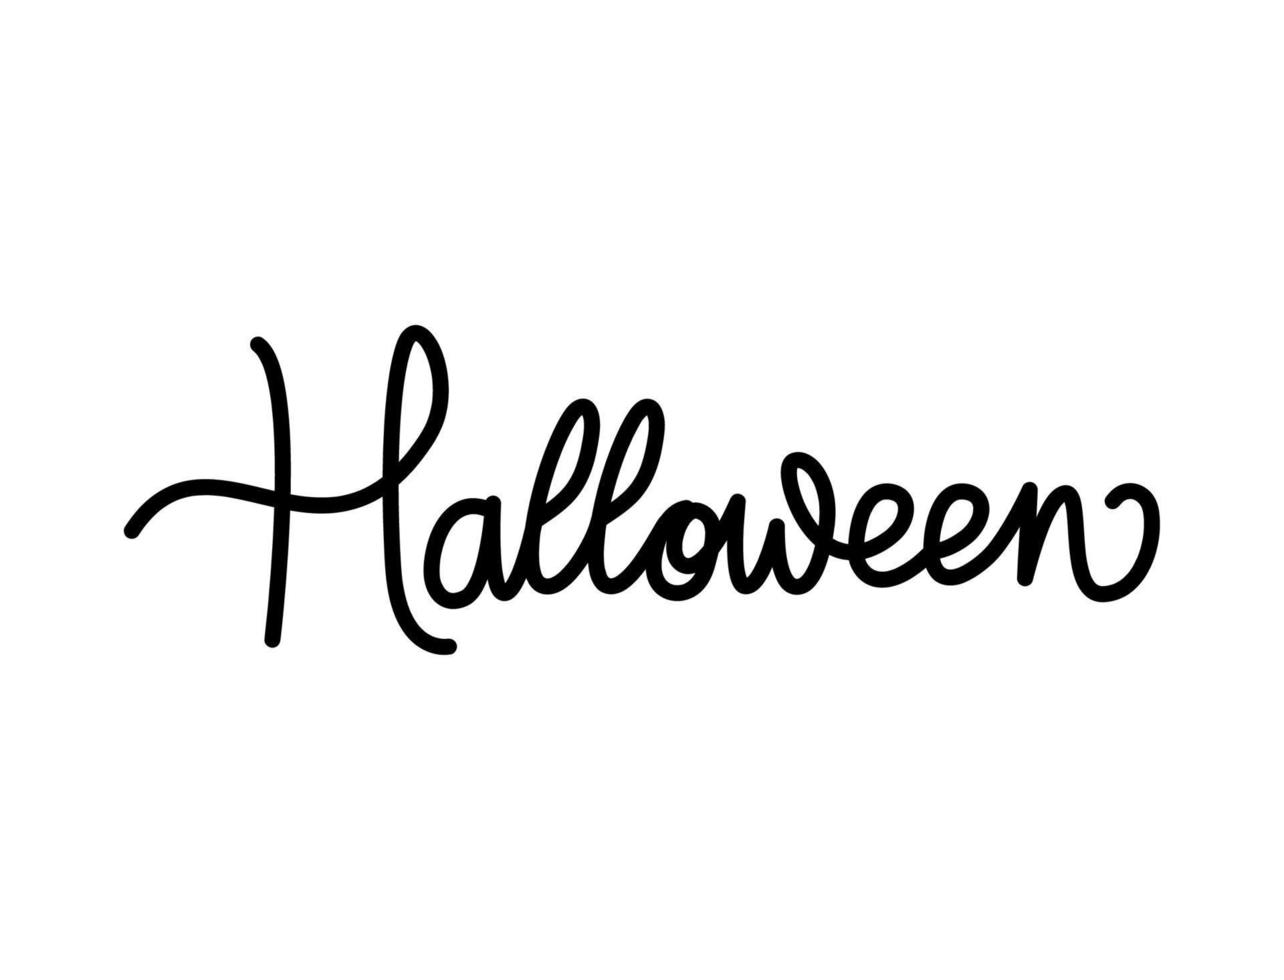 Halloween dans cursive des lettres vecteur